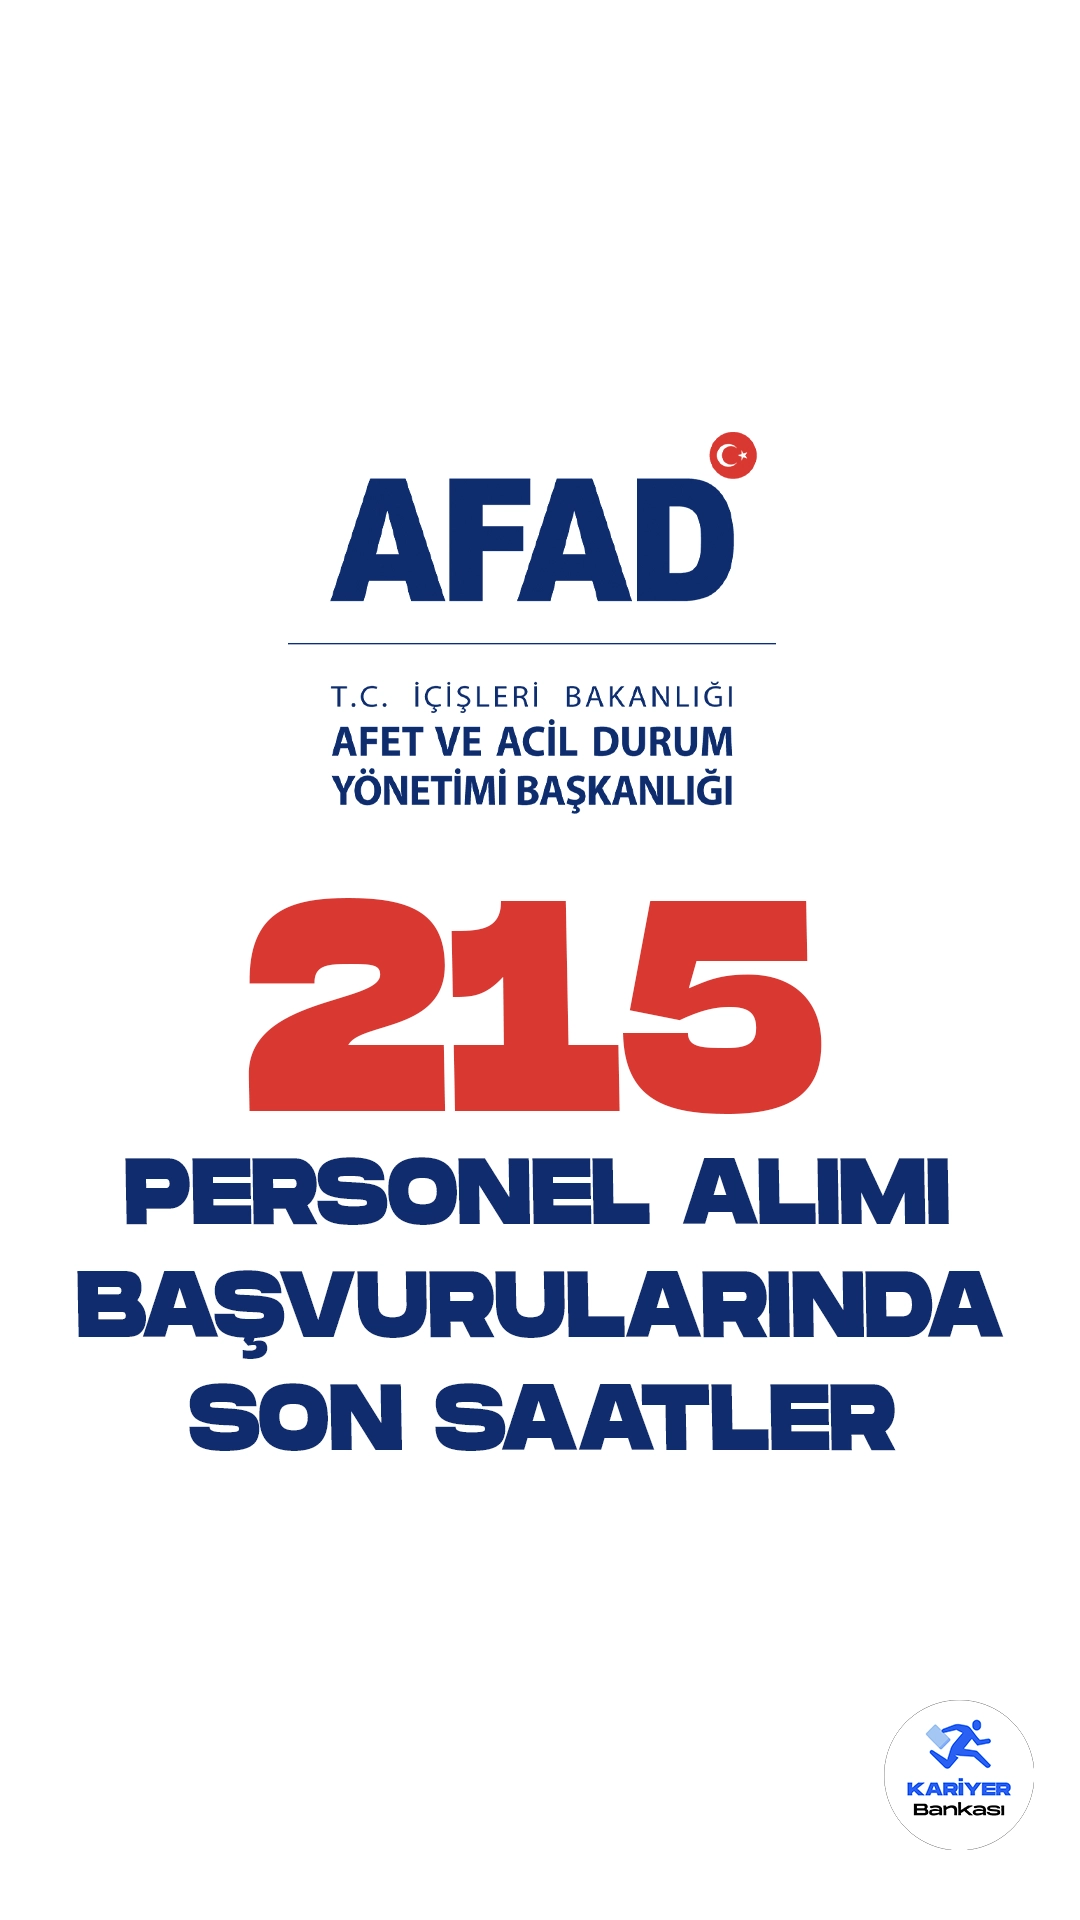 AFAD personel alımı başvurularında sona gelindi. Resmi Gazete’de yayımlanan duyuruda, İçişleri Bakanlığı Afet ve Acil Durum Yönetimi Başkanlığına (AFAD) sınavla arama ve kurtarma teknisyeni alınacağı aktarılmıştı.Başvurular bugün(17 Ekim) sona erecek. Başvuru yapacak adayların şartları dikkatle incelemsi gerekmektedir.